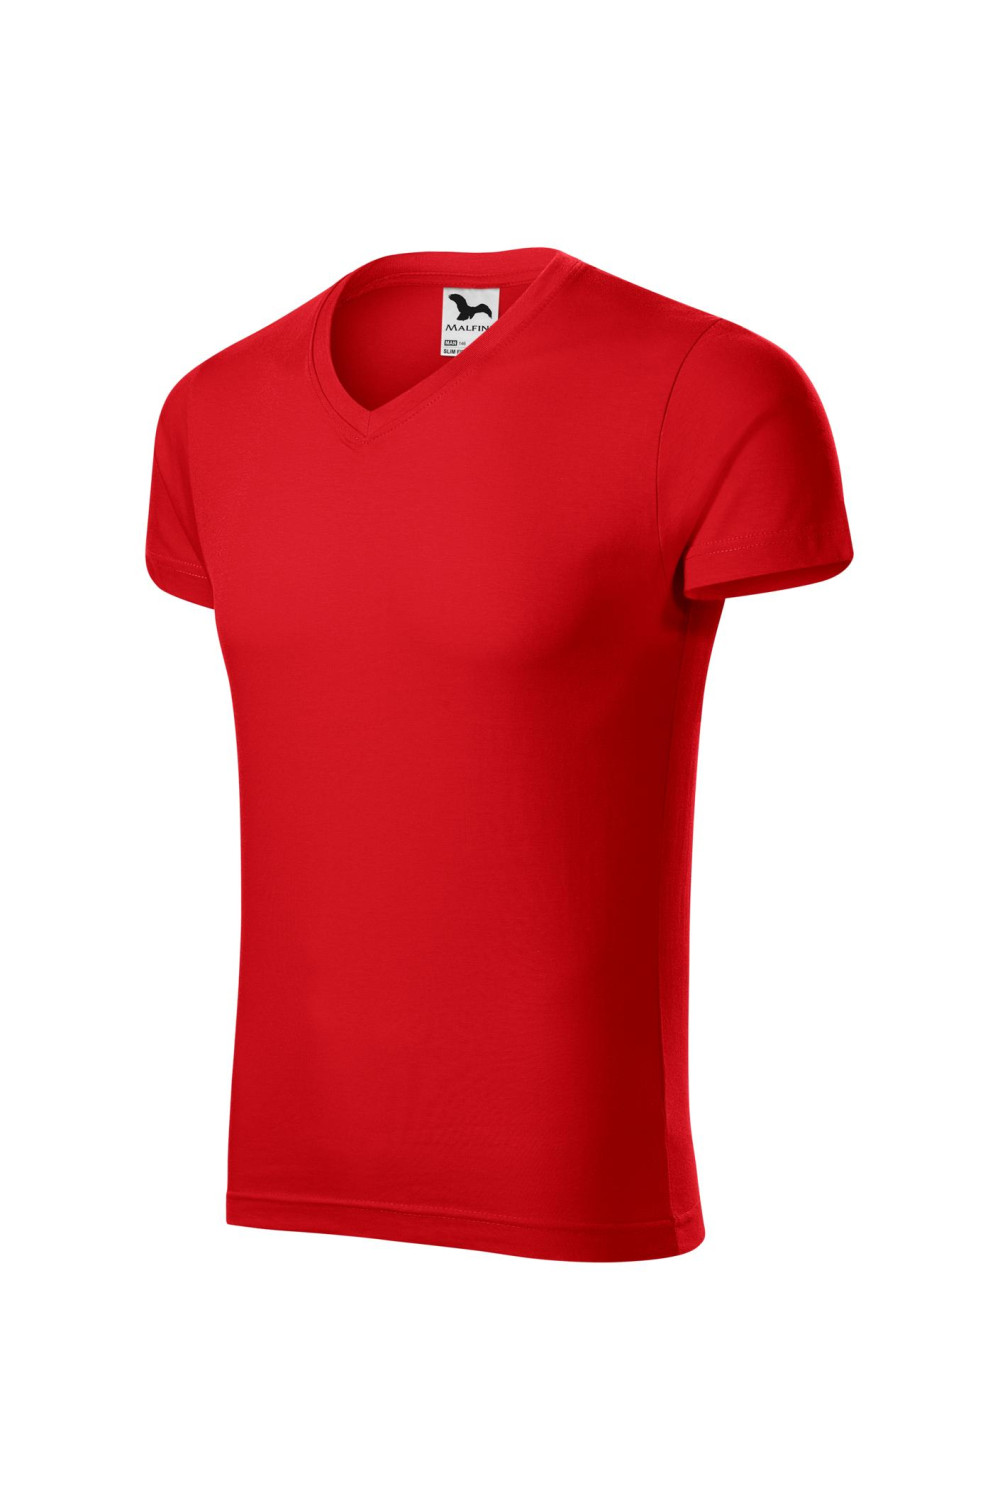 Koszulka męska 100% bawełna t-shirt SLIM FIT V-NECK 146 kolor czerwony